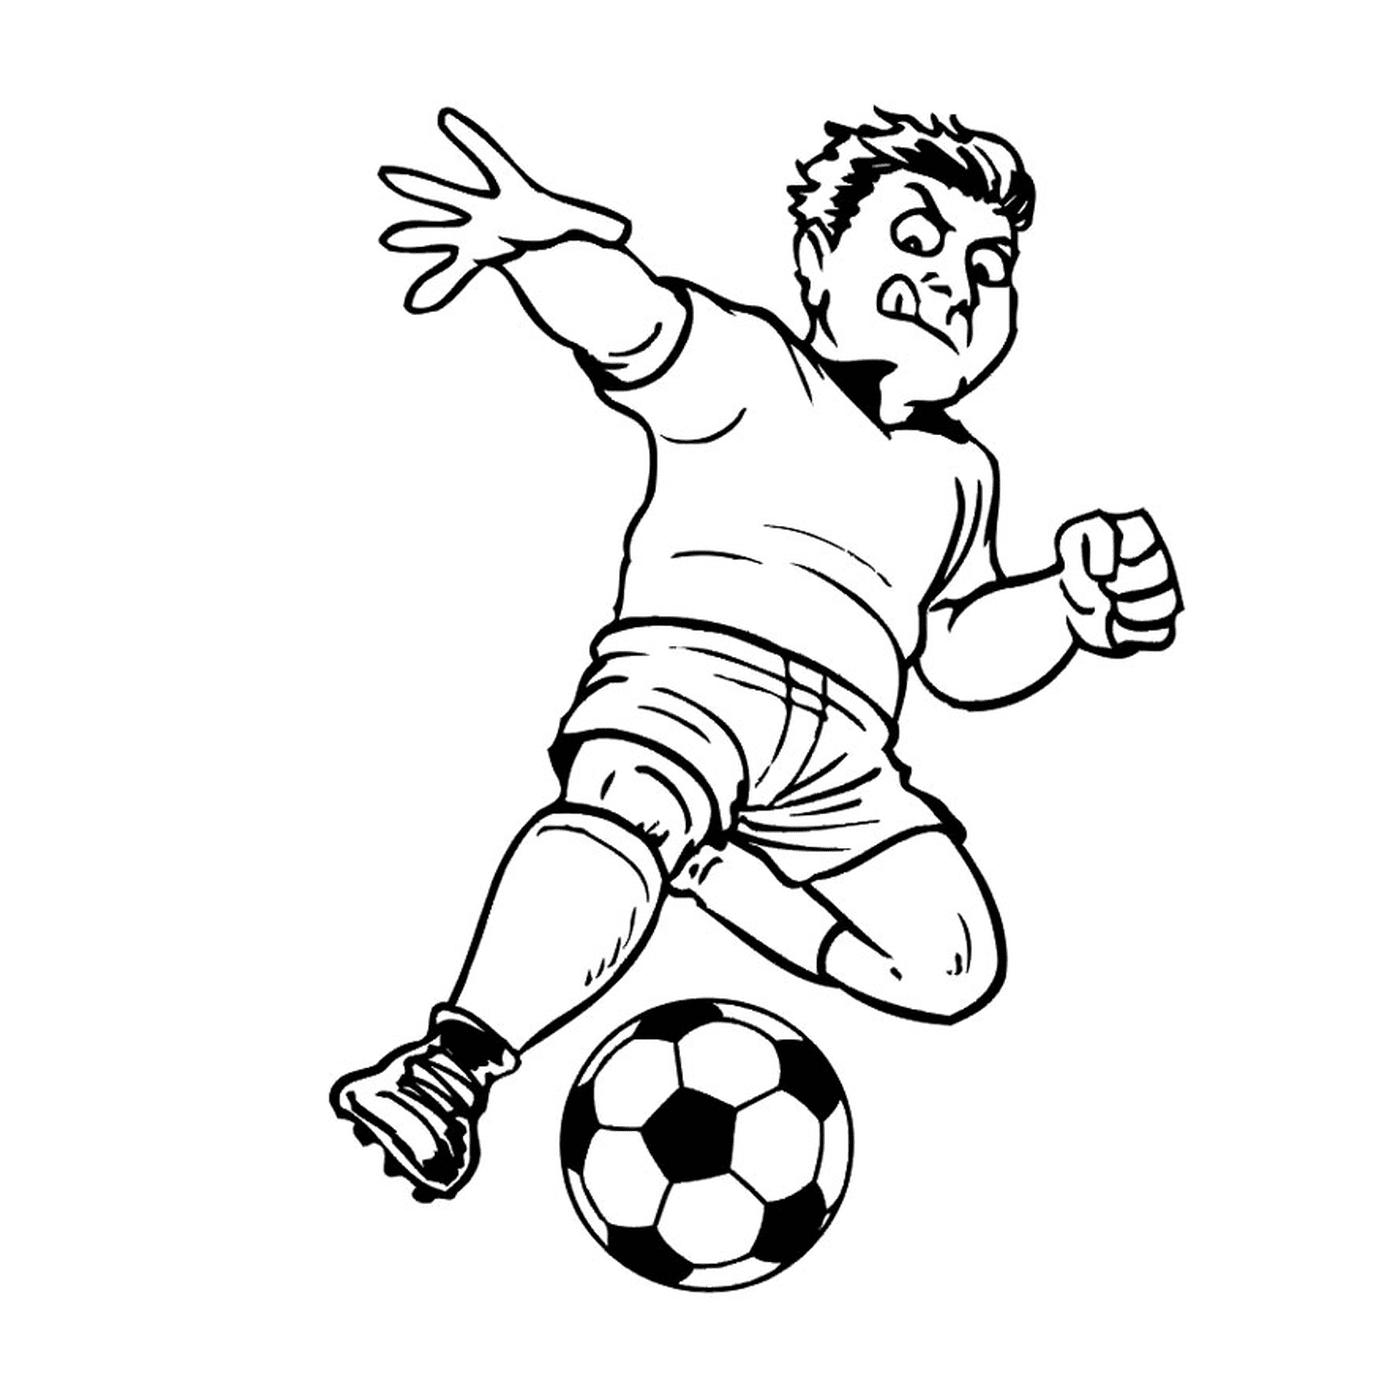  Un hombre juega al fútbol 